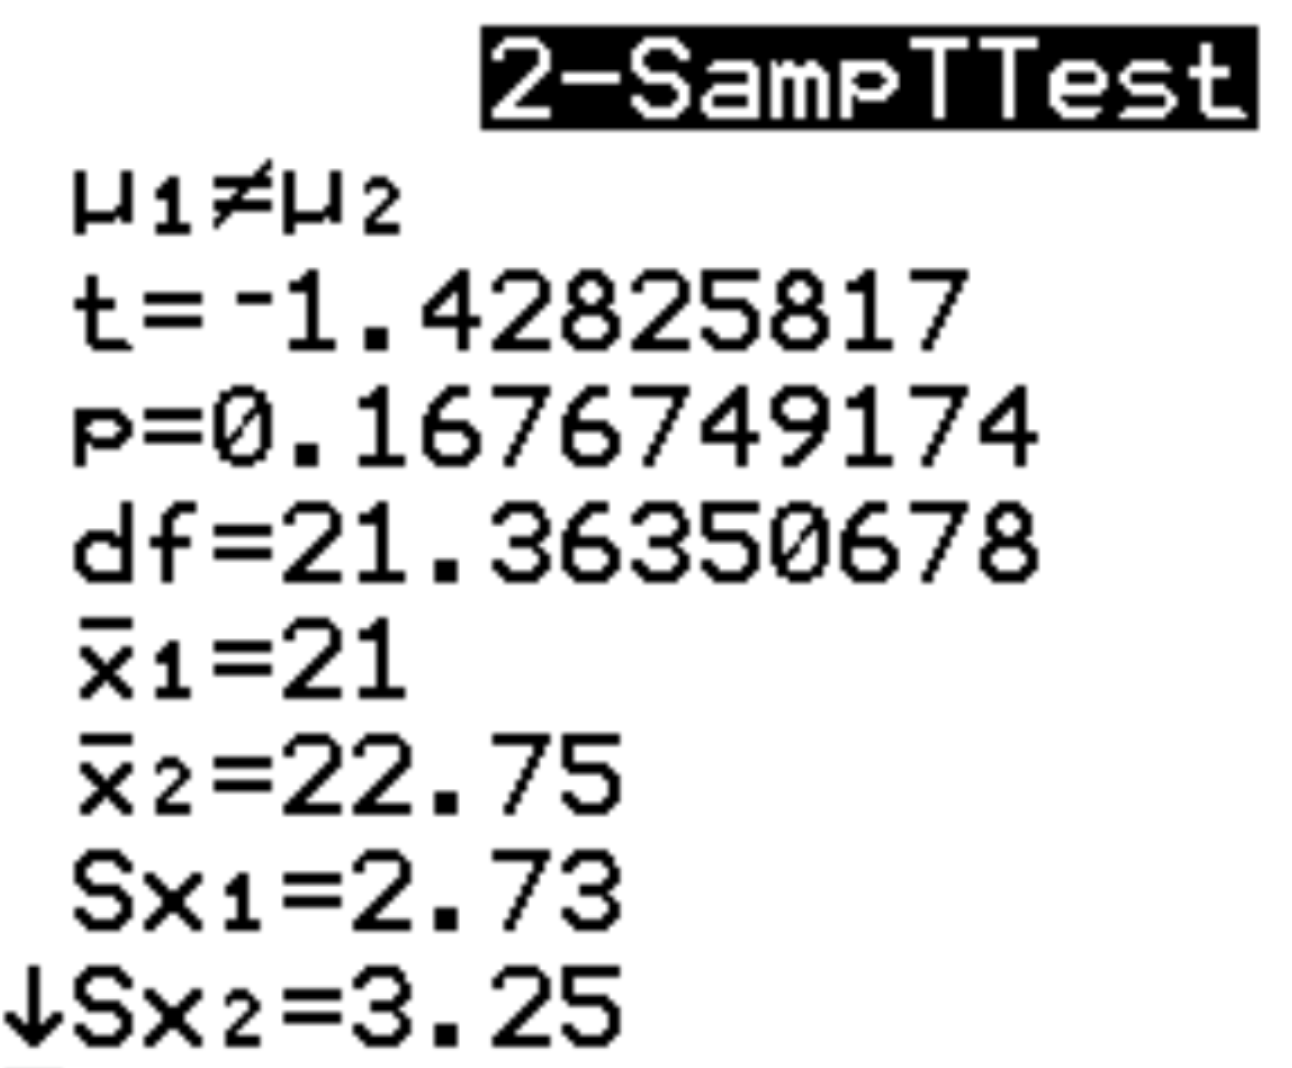 Gerando dois testes t de amostra em uma calculadora TI-84